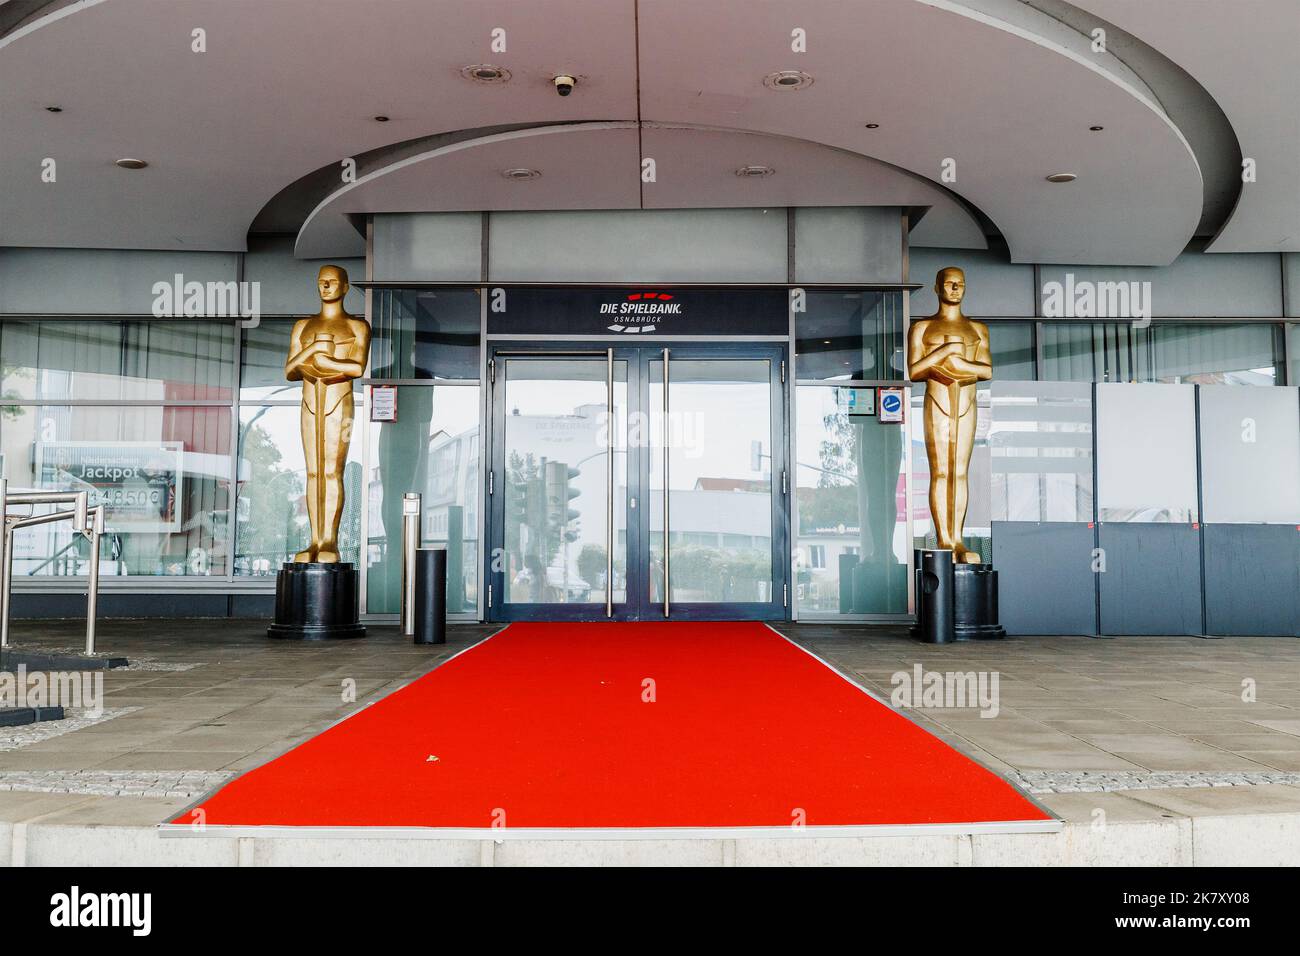 25 luglio 2022, Osnabruck, Germania: Ingresso al casinò Die Spielbank con tappeti rossi e statue Oscar Foto Stock